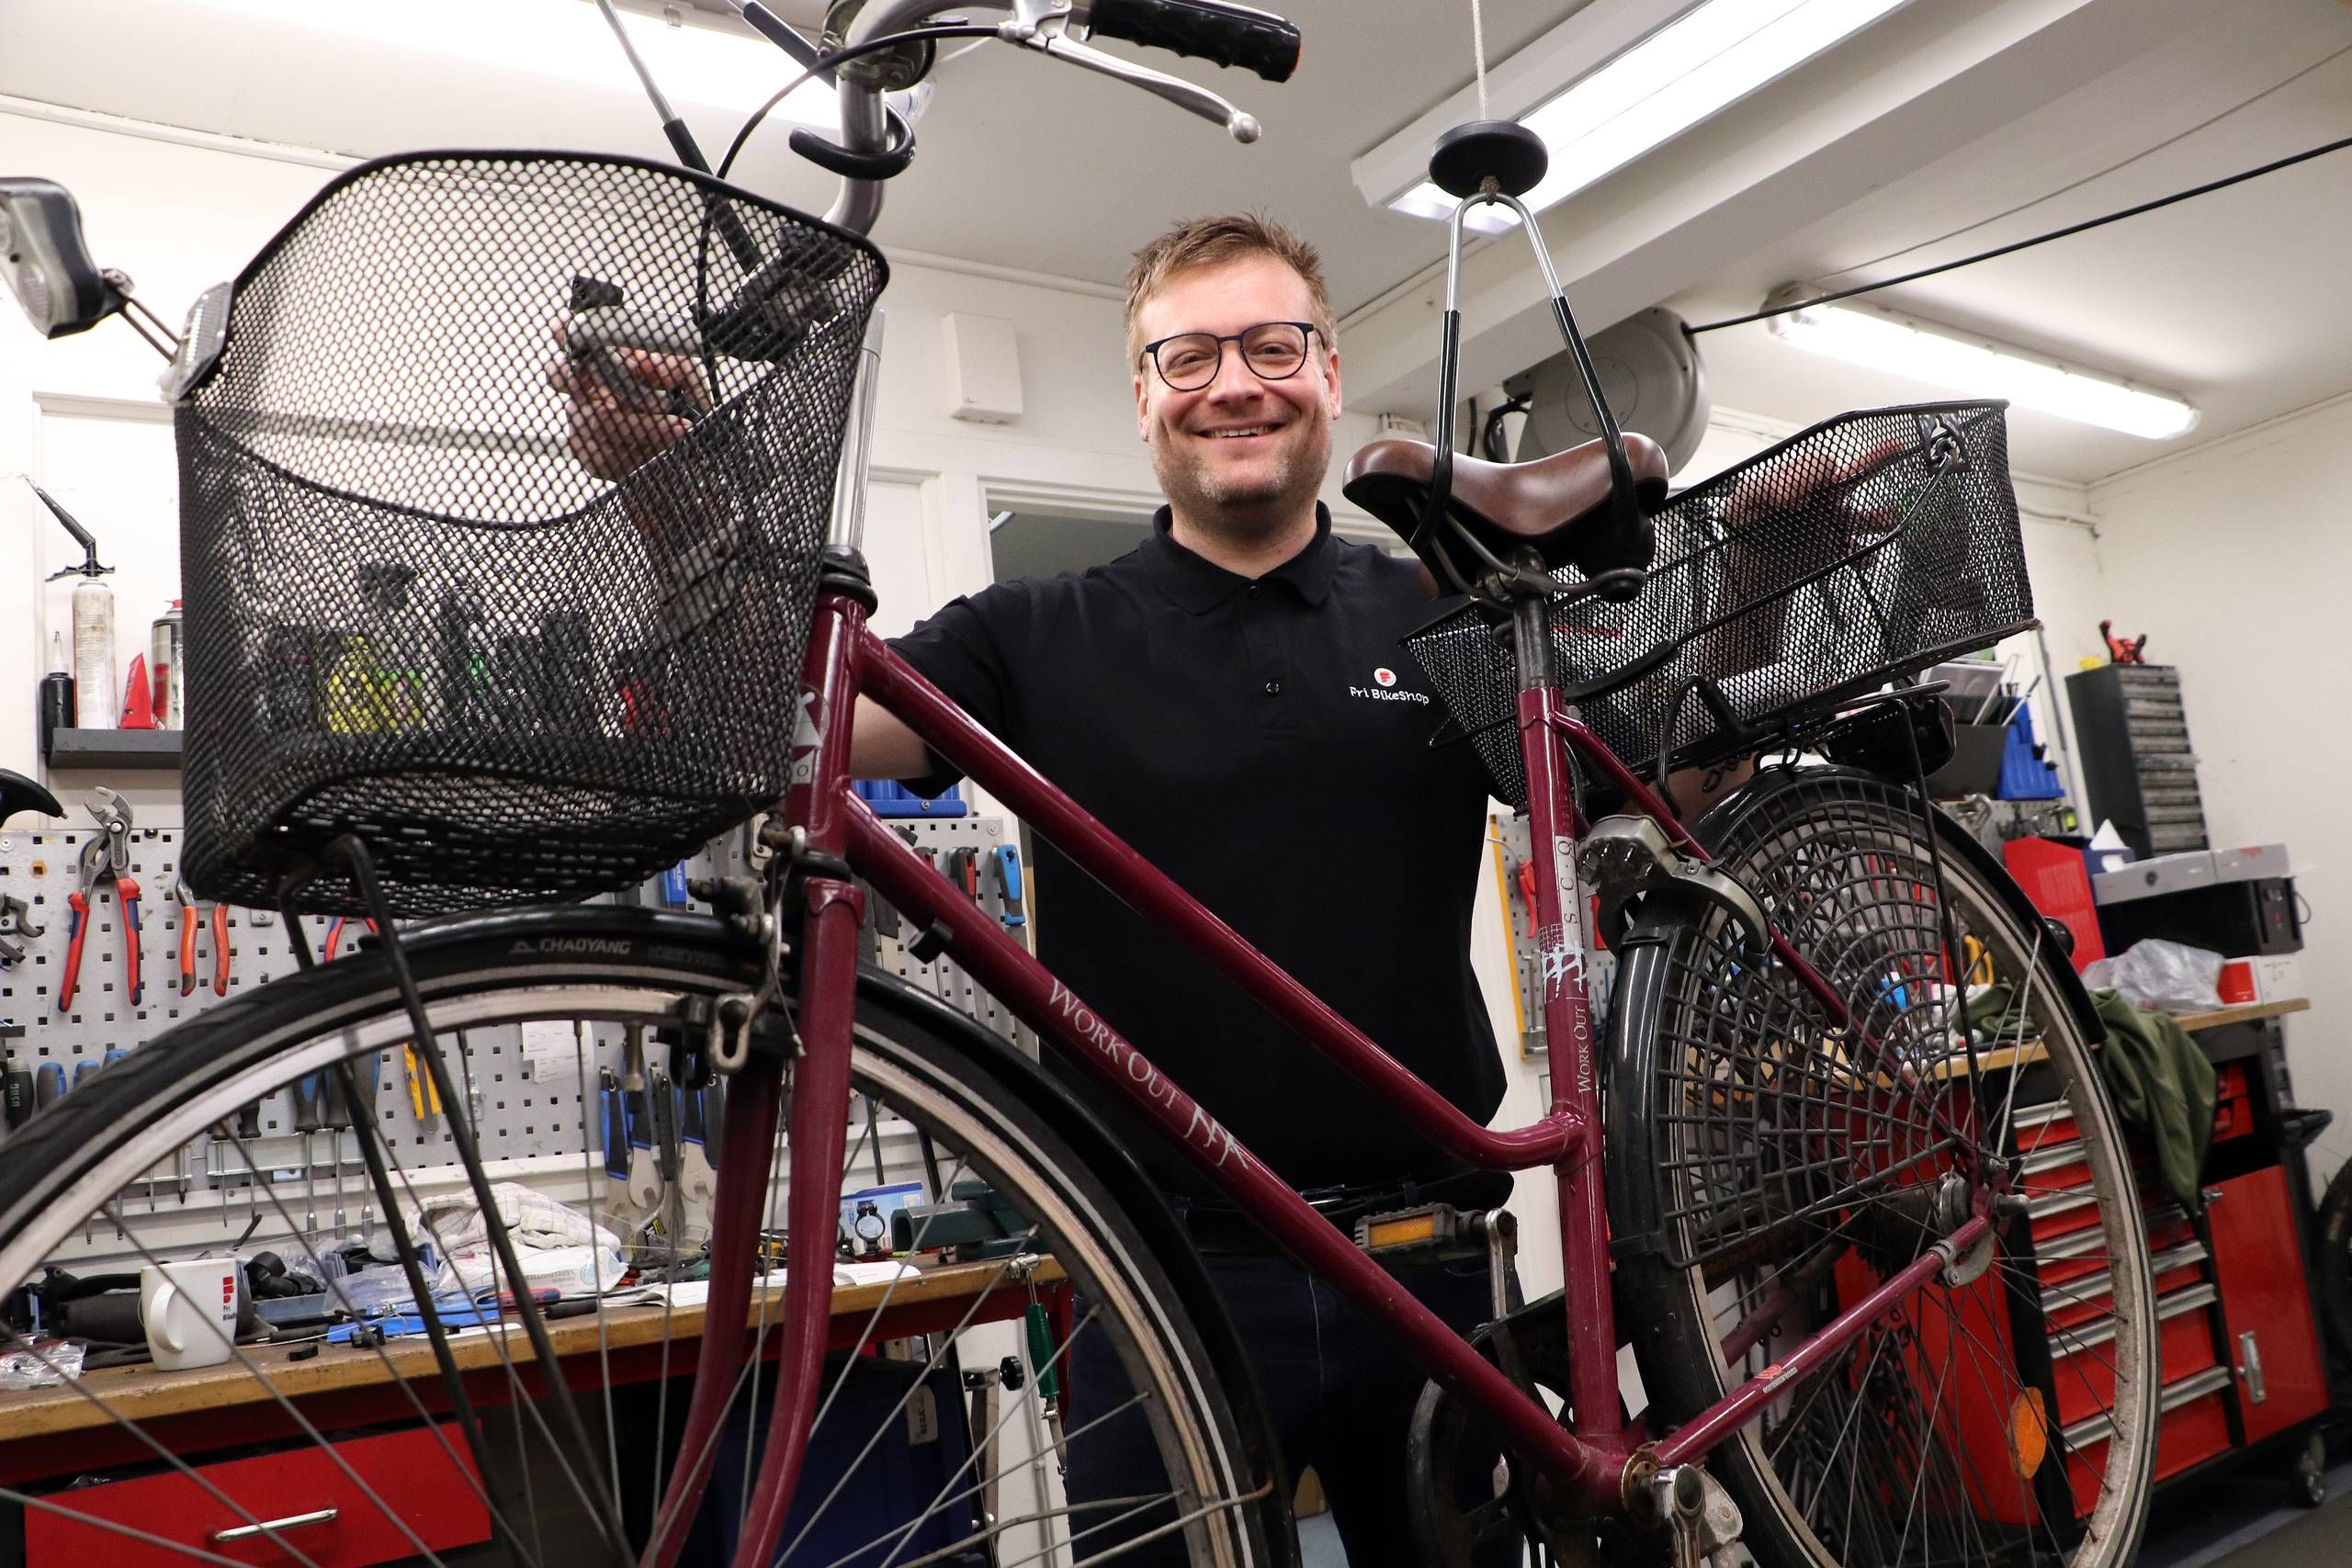 BikeShop sætter kurs mod Silkeborg